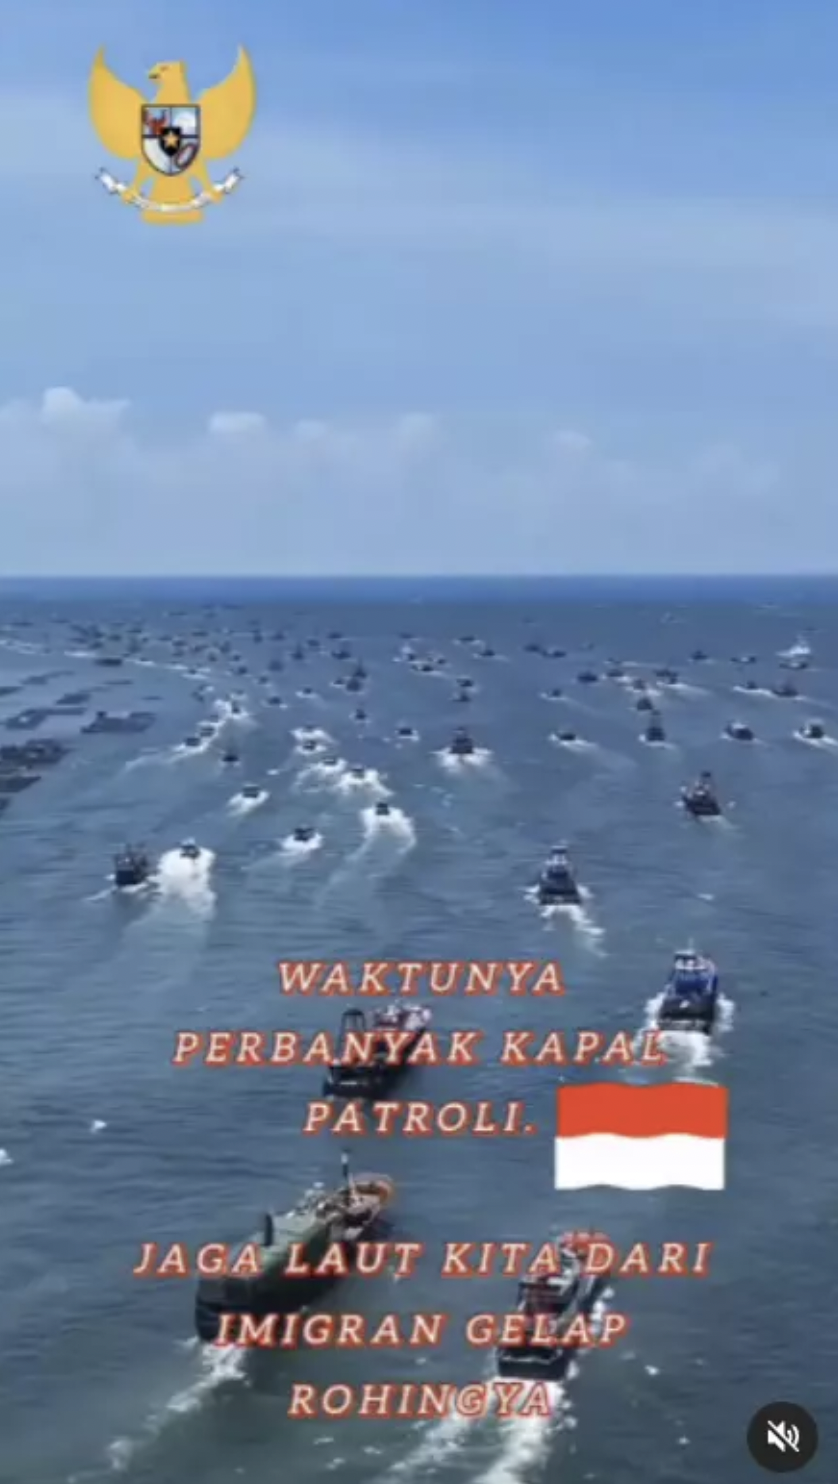 Dies ist ein Screenshot eines auf TikTok geposteten Videos, das Boote voller Rohingya auf dem Weg nach Indonesien zeigen soll.  „Schützen Sie unsere Meere vor illegalen Rohingya-Flüchtlingen“, heißt es im Text.